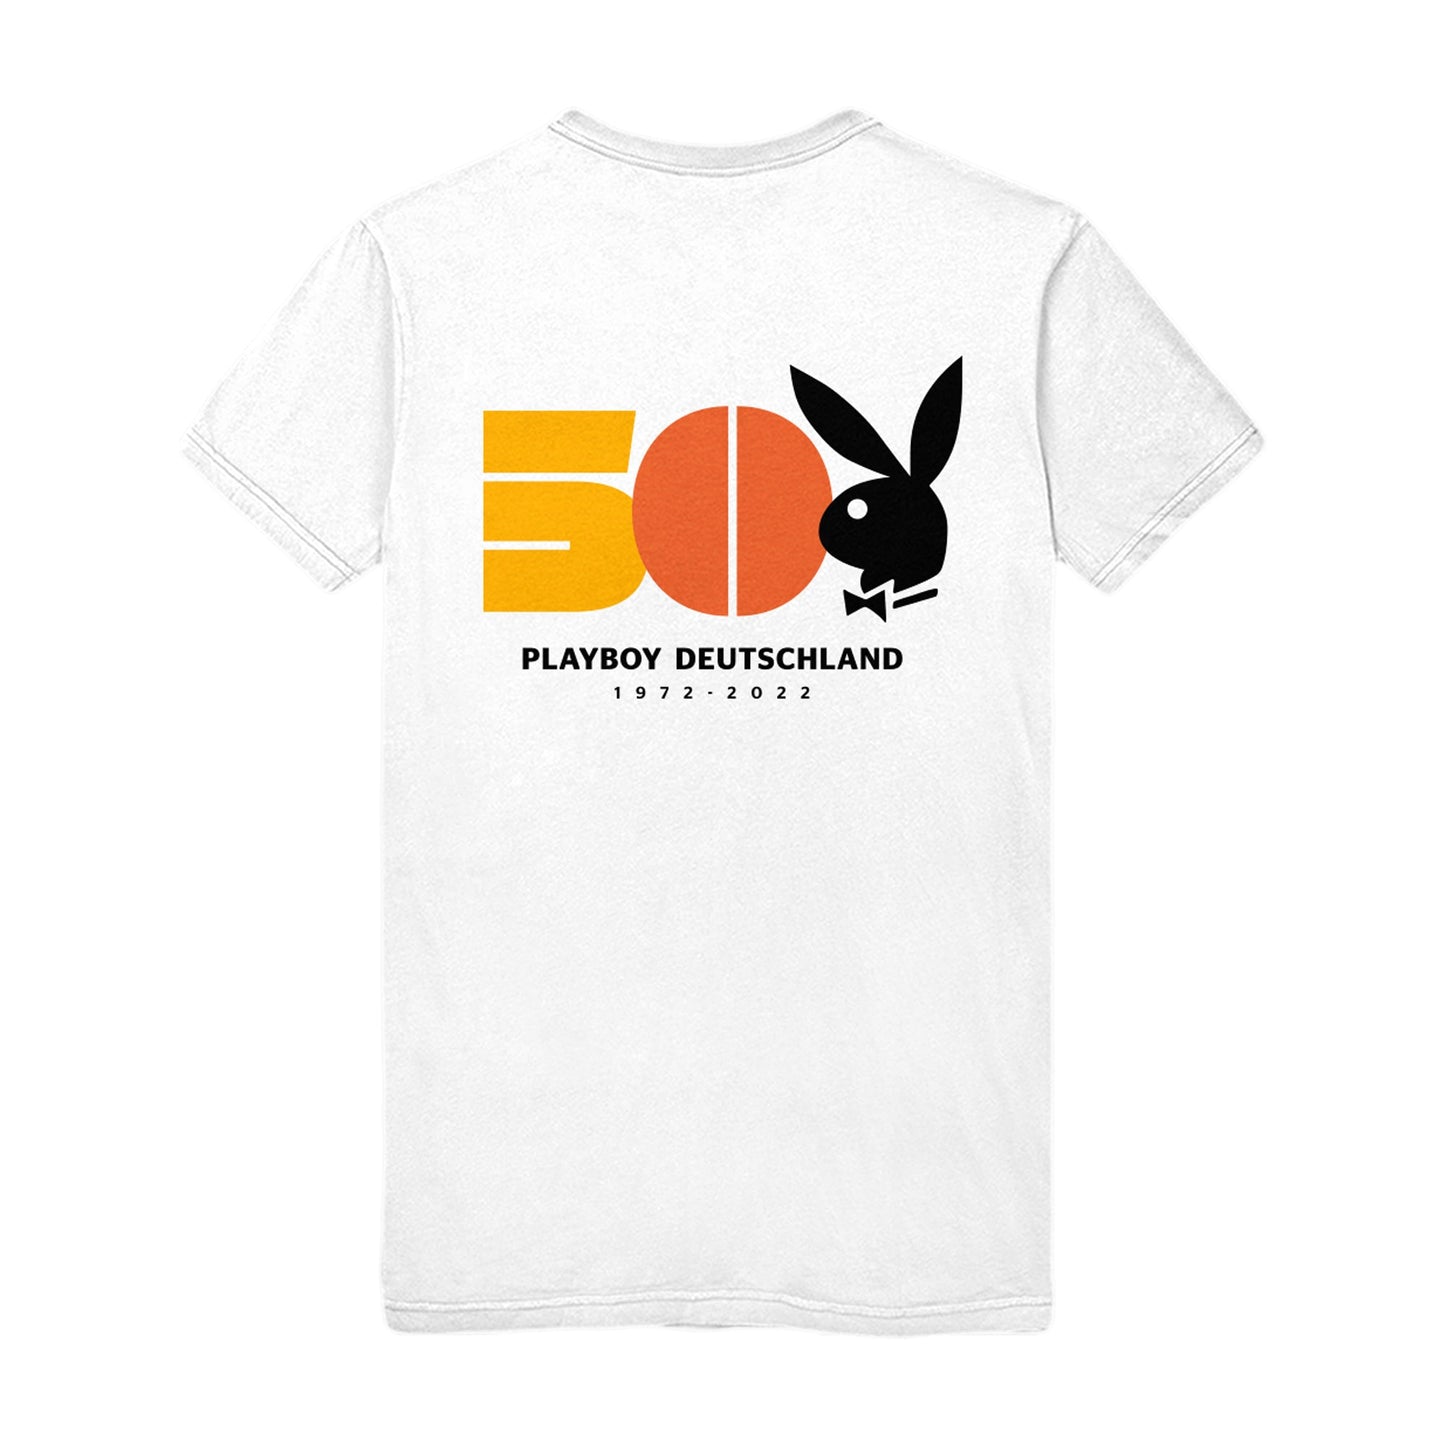 50 Jahre Playboy Deutschland Logo T-Shirt